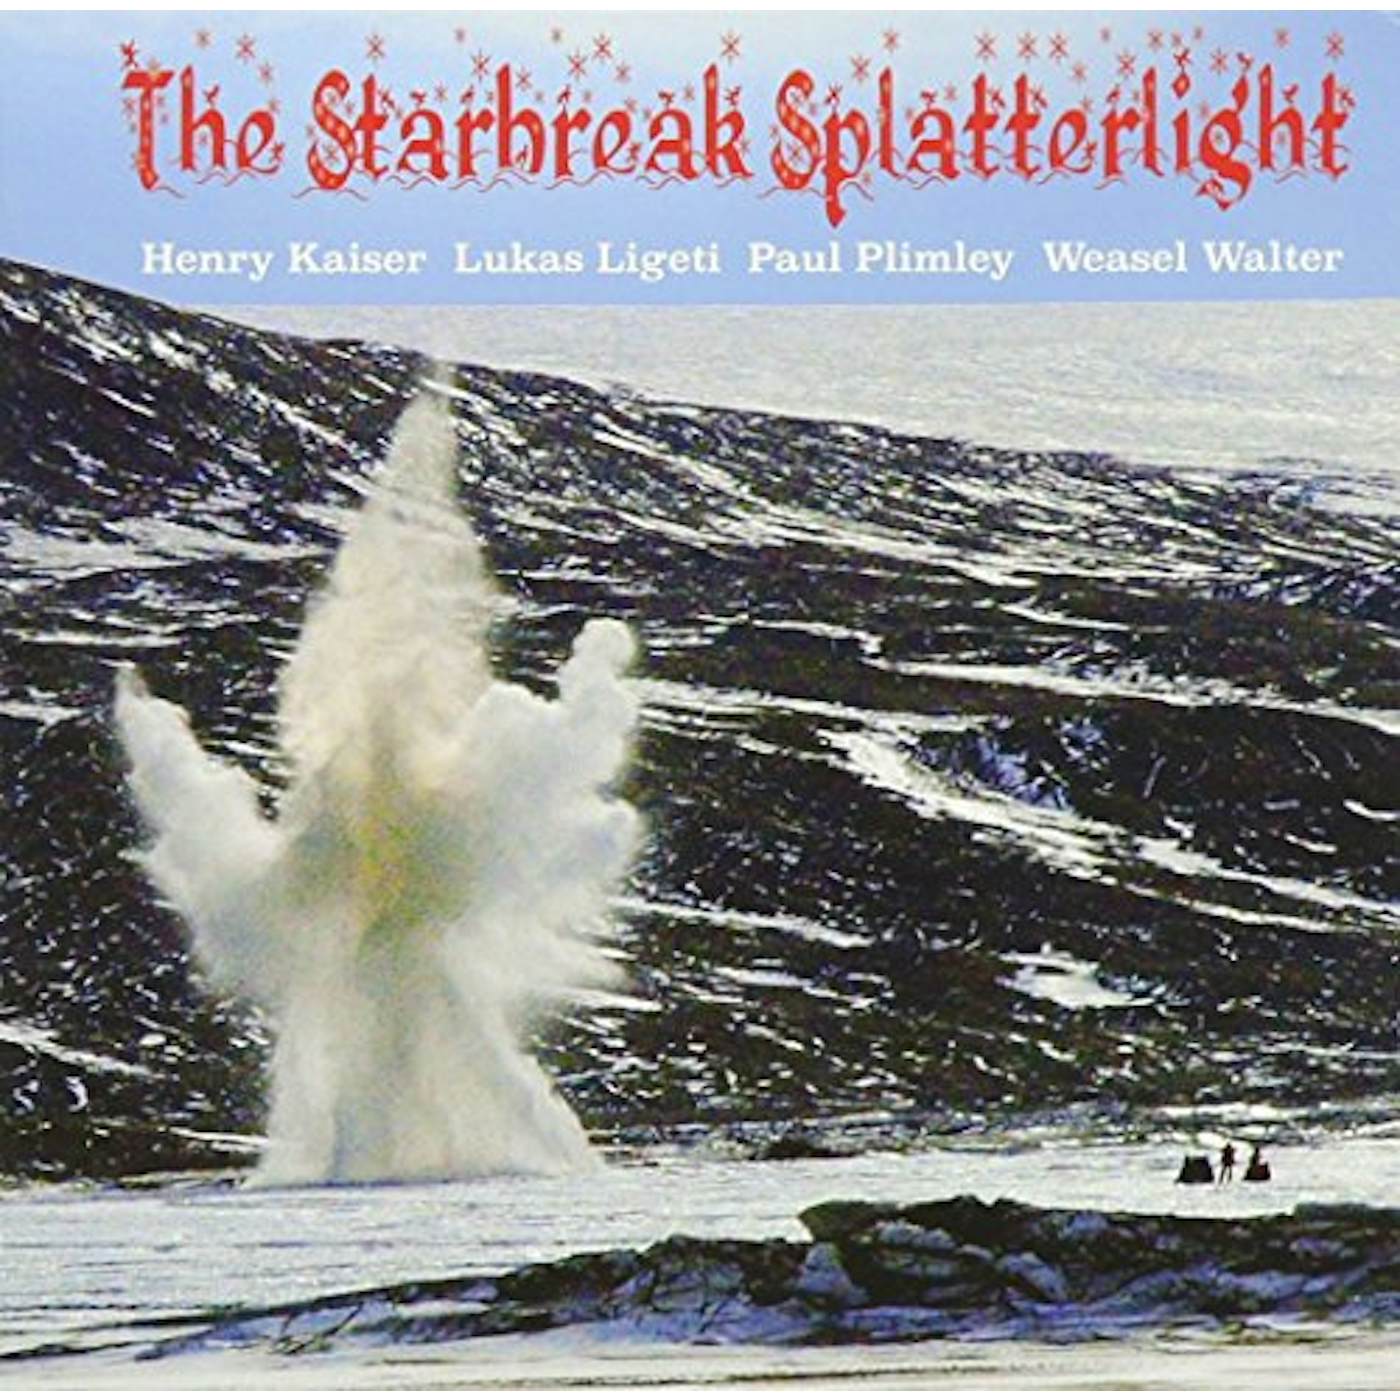 Henry Kaiser STARBREAK SPLATTERLIGHT CD